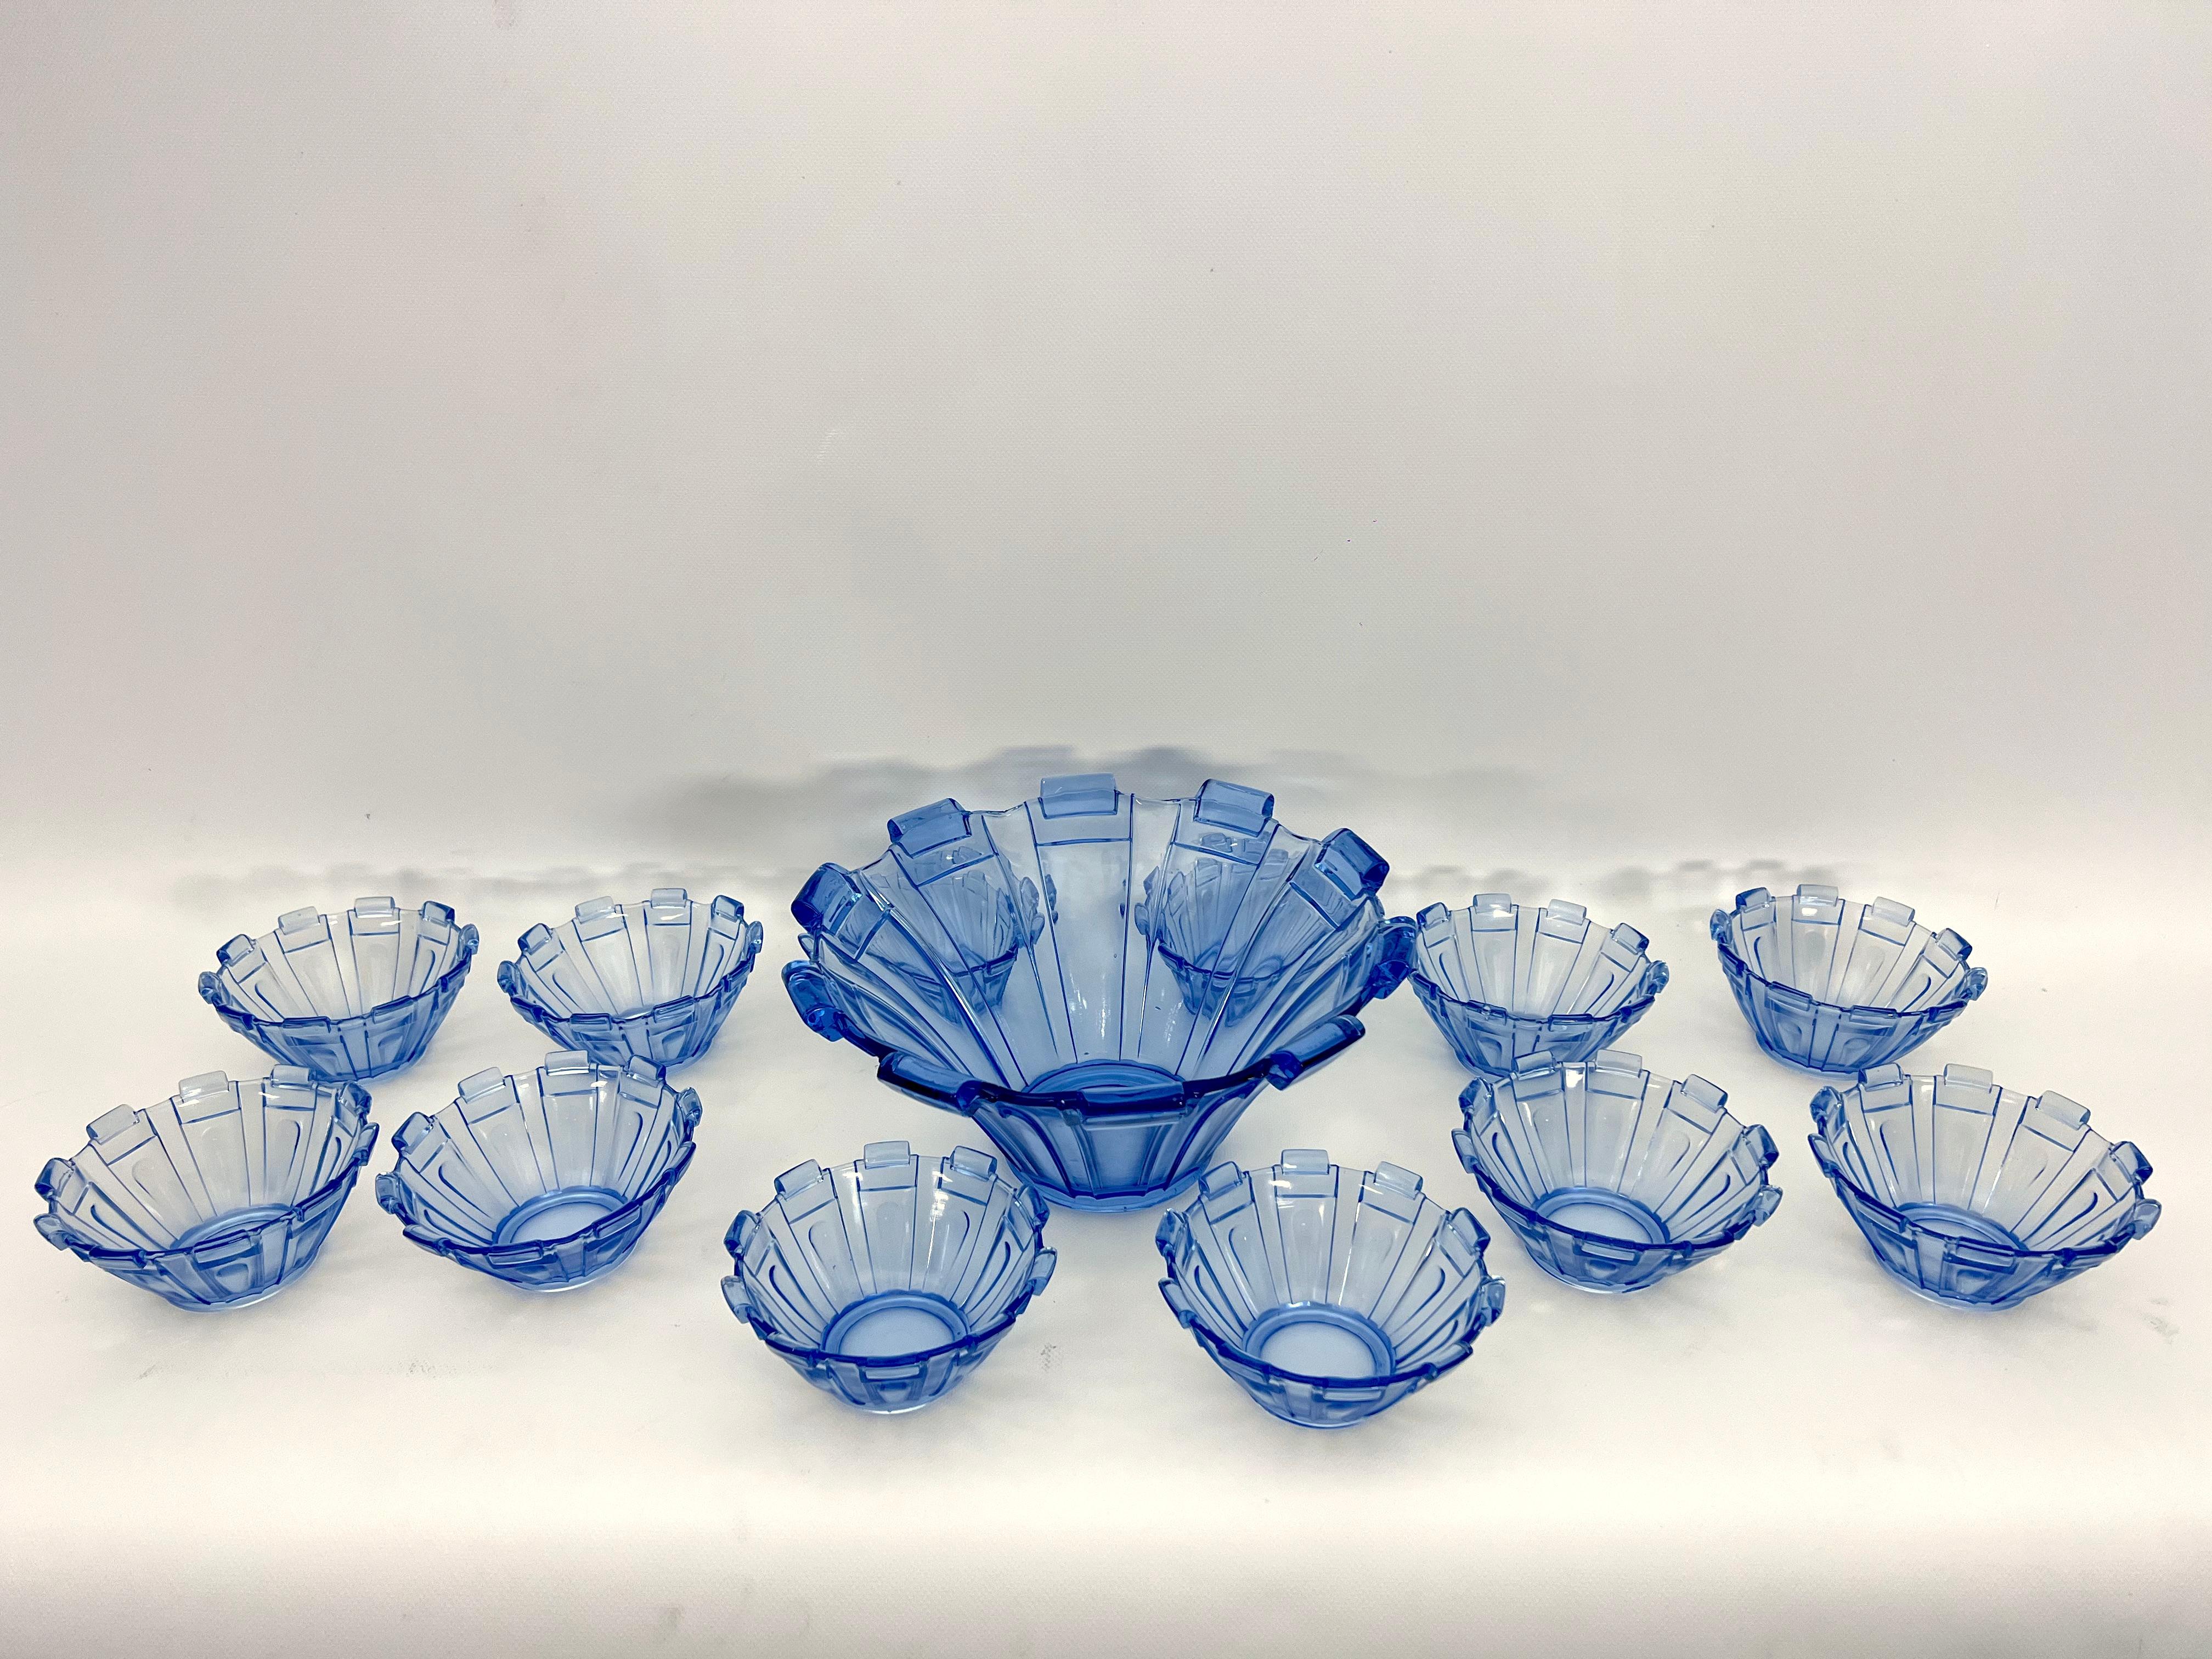 Cet ensemble composé d'un bol et de 12 tasses est fabriqué en verre bleu de Murano et a été produit en Italie dans les années 30 dans le style Art déco. Très bon état général vintage avec de rares petits éclats sous certaines coupes comme le